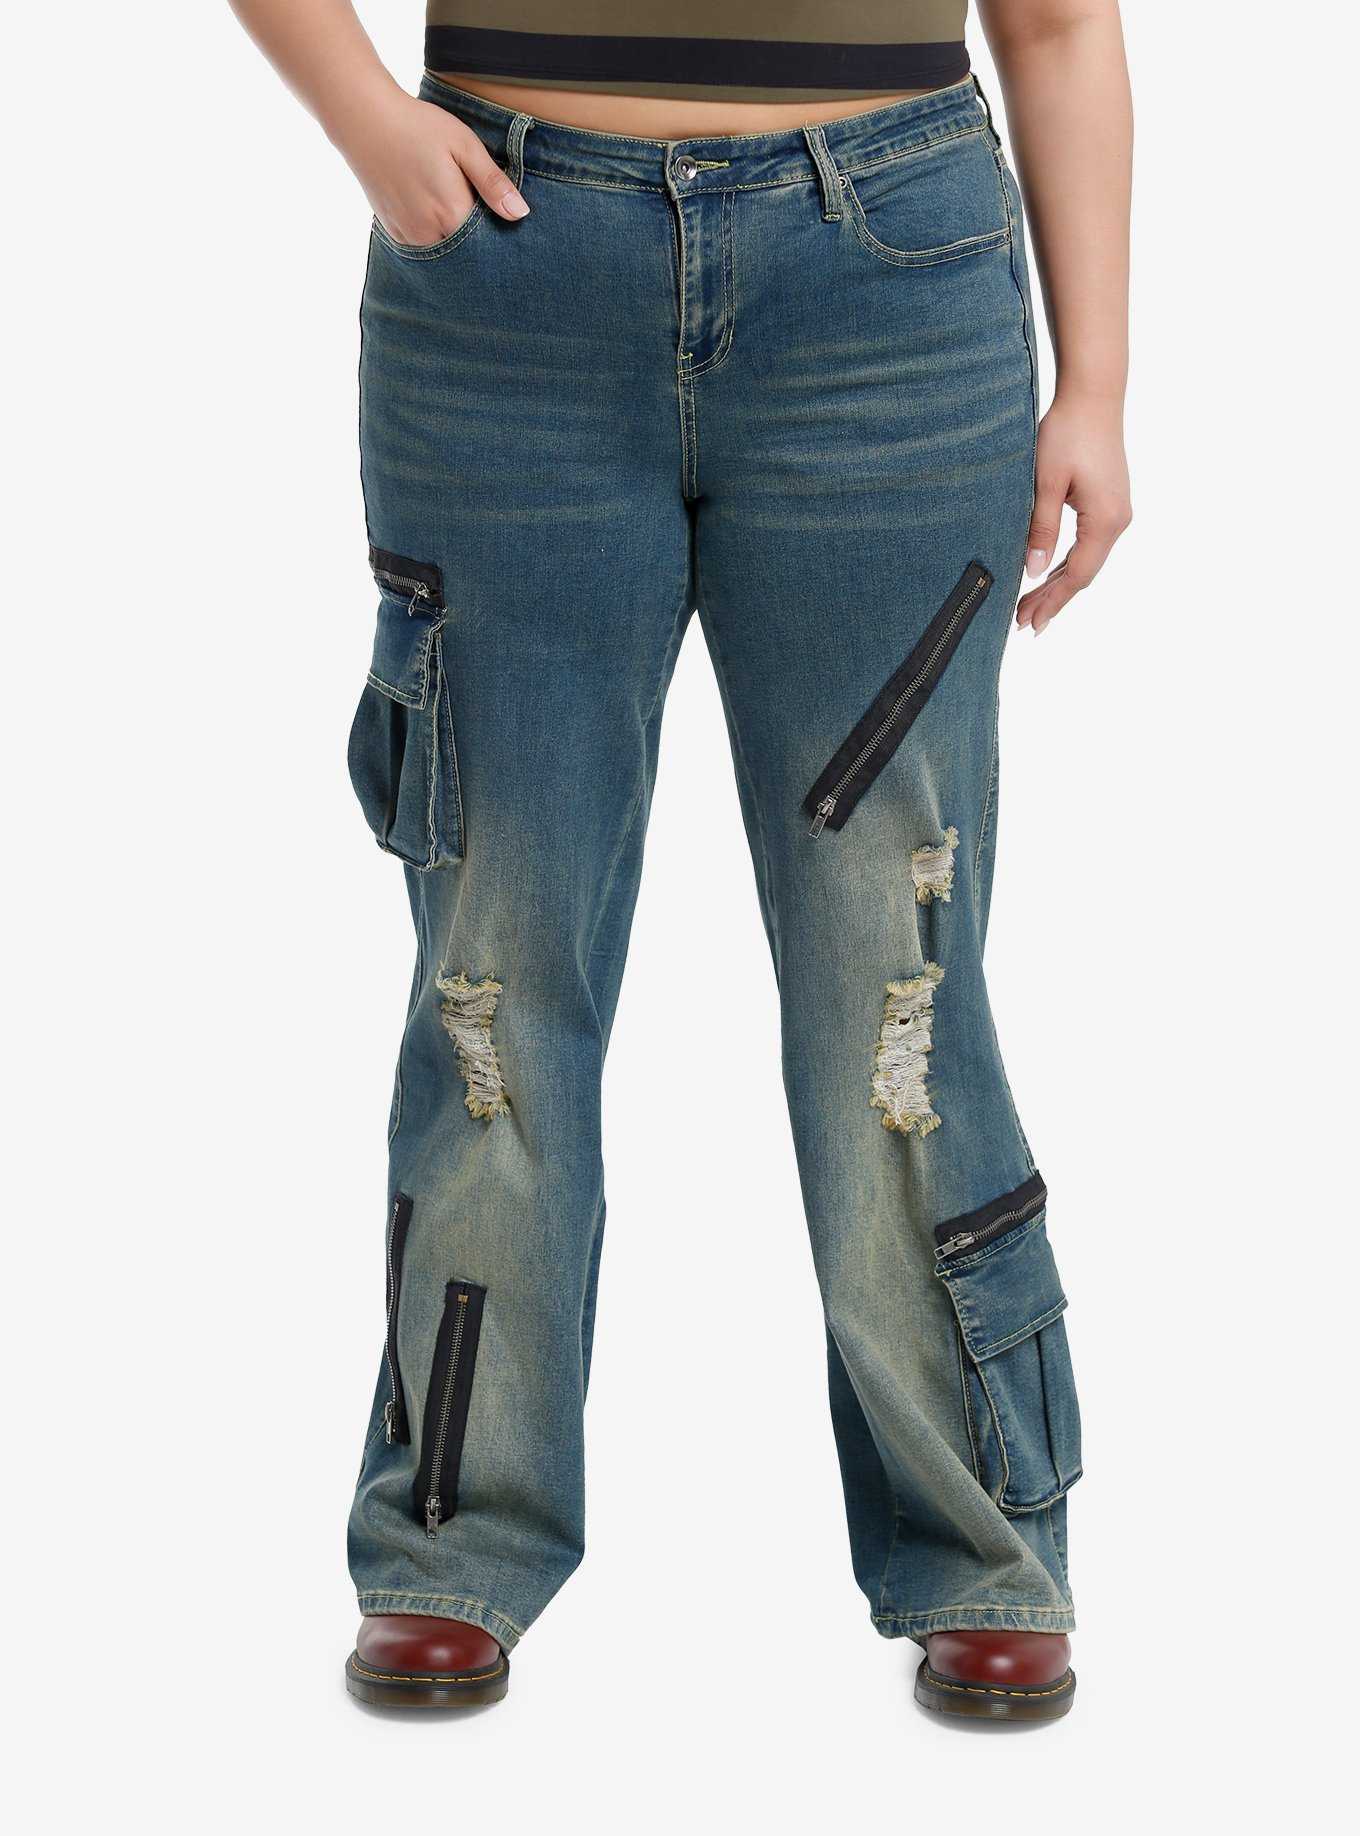 Denim Ribbon Jeans Grunge Hip Hop Zipper Baggy Pants Women Fashion